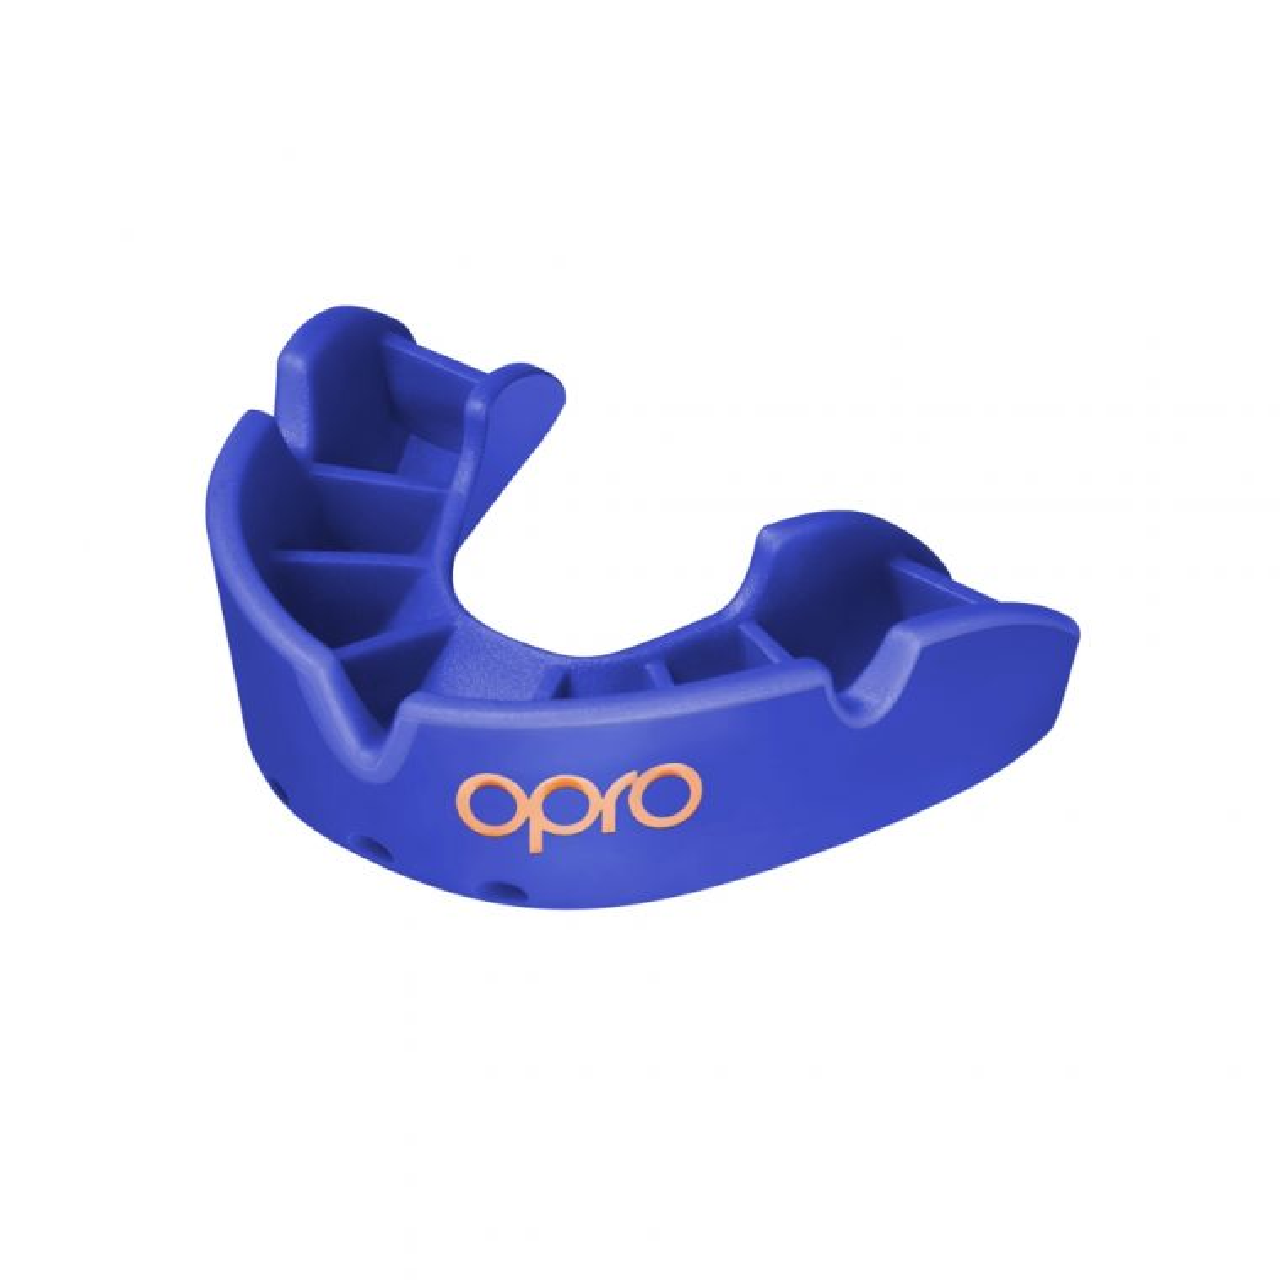 OPRO المستوى البرونزي الأزرق - واقي الفم المناسب لمستوى التدريب